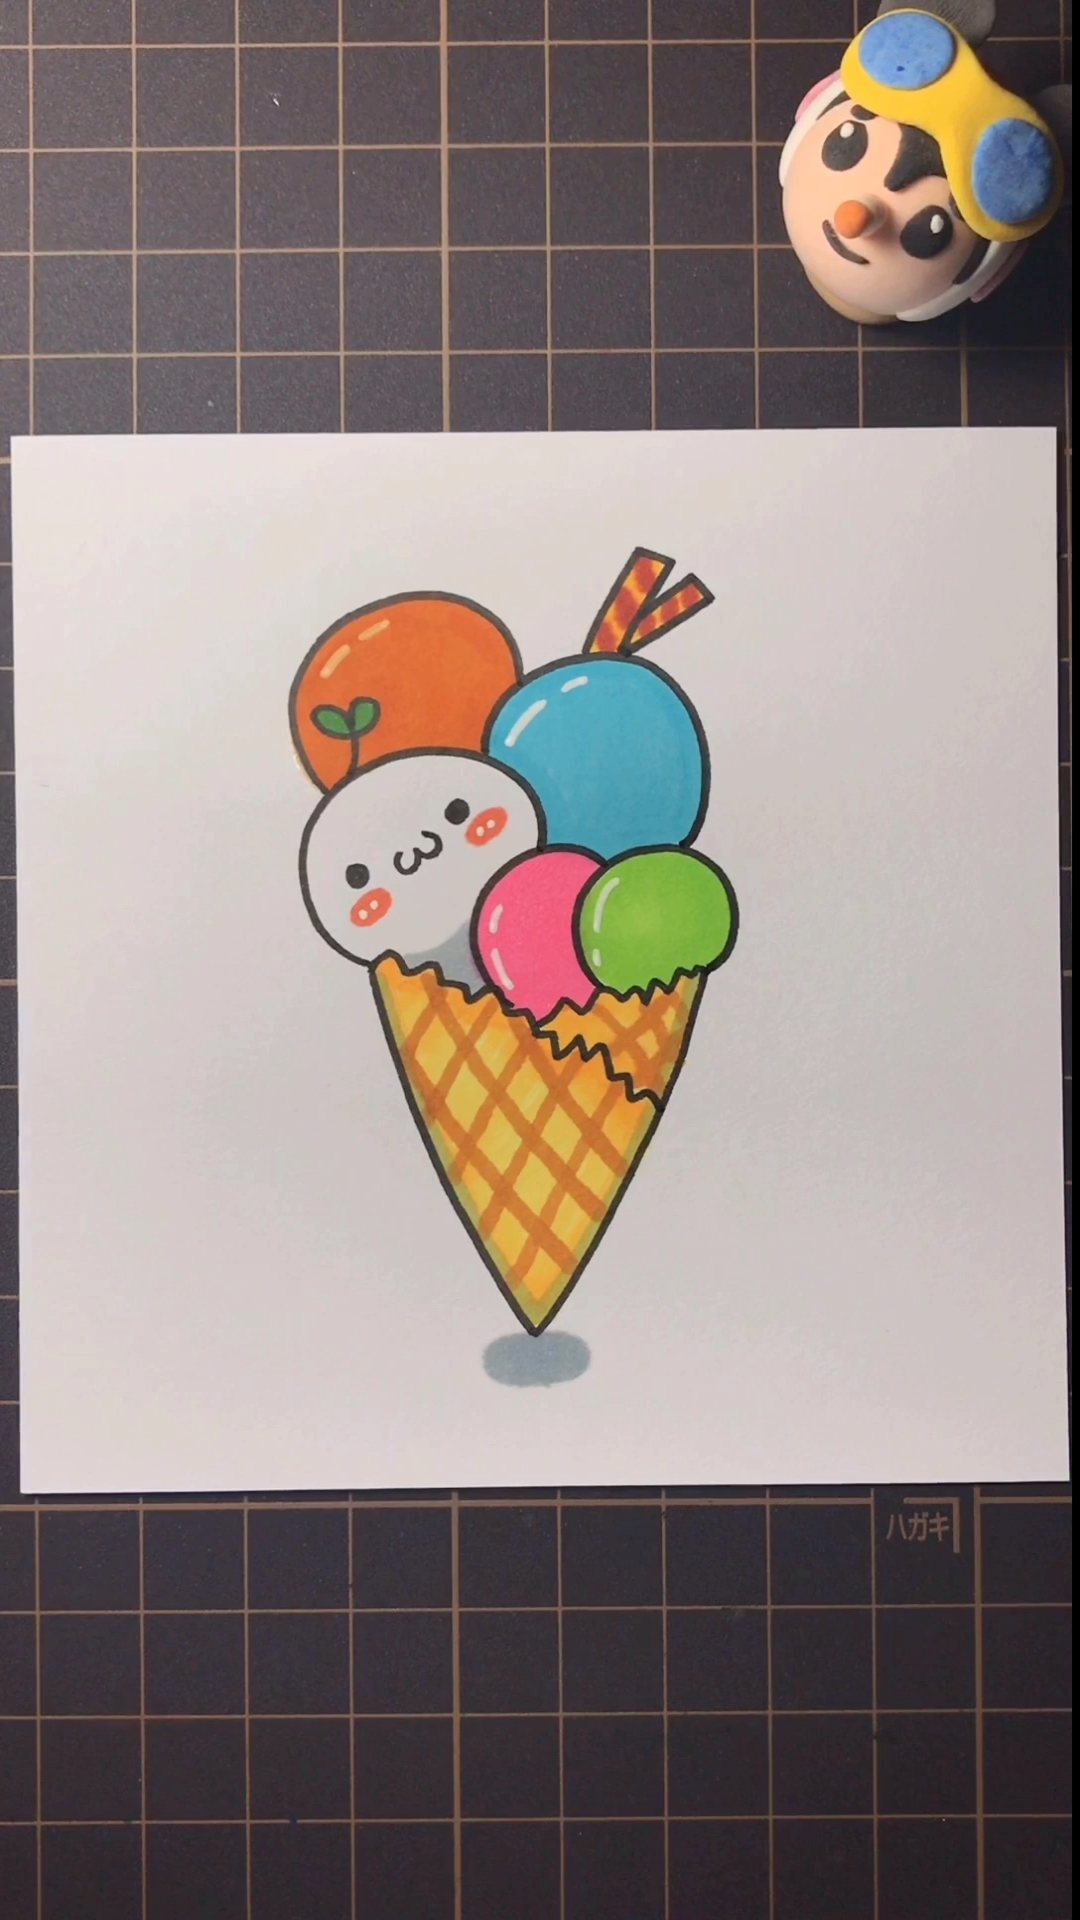 冰淇淋的画法 可爱图片